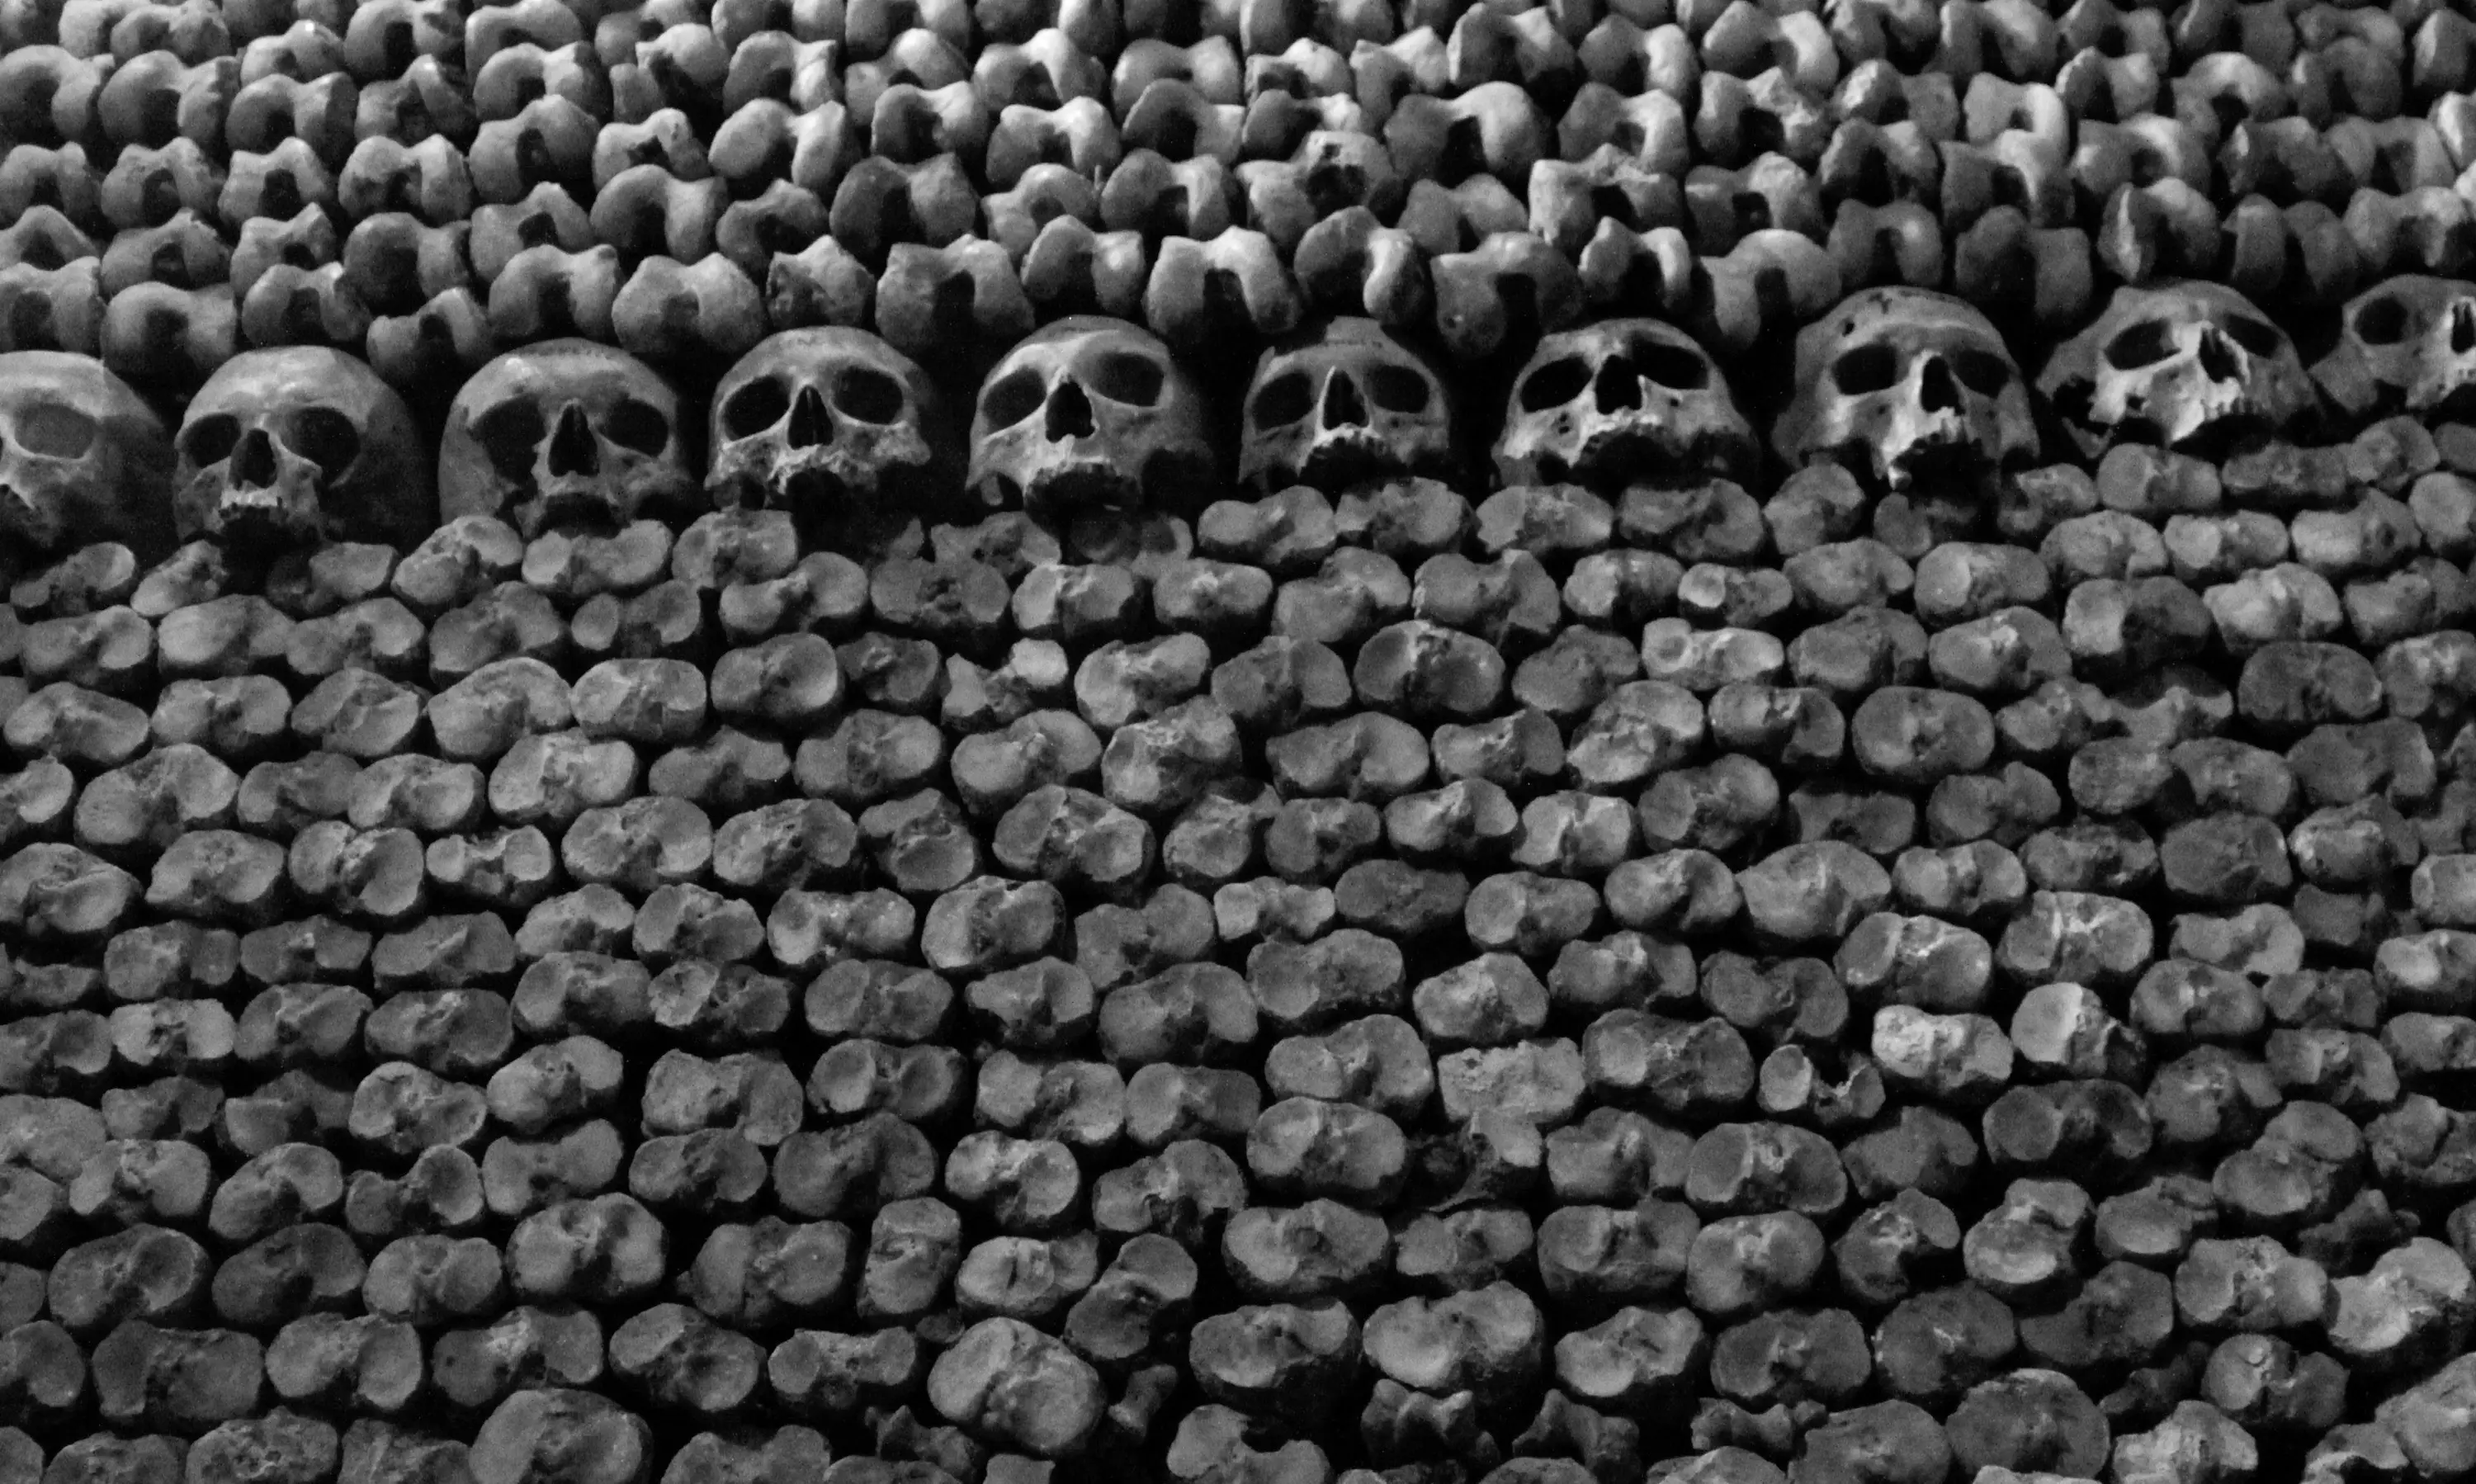 Bones in Paris' catacombs